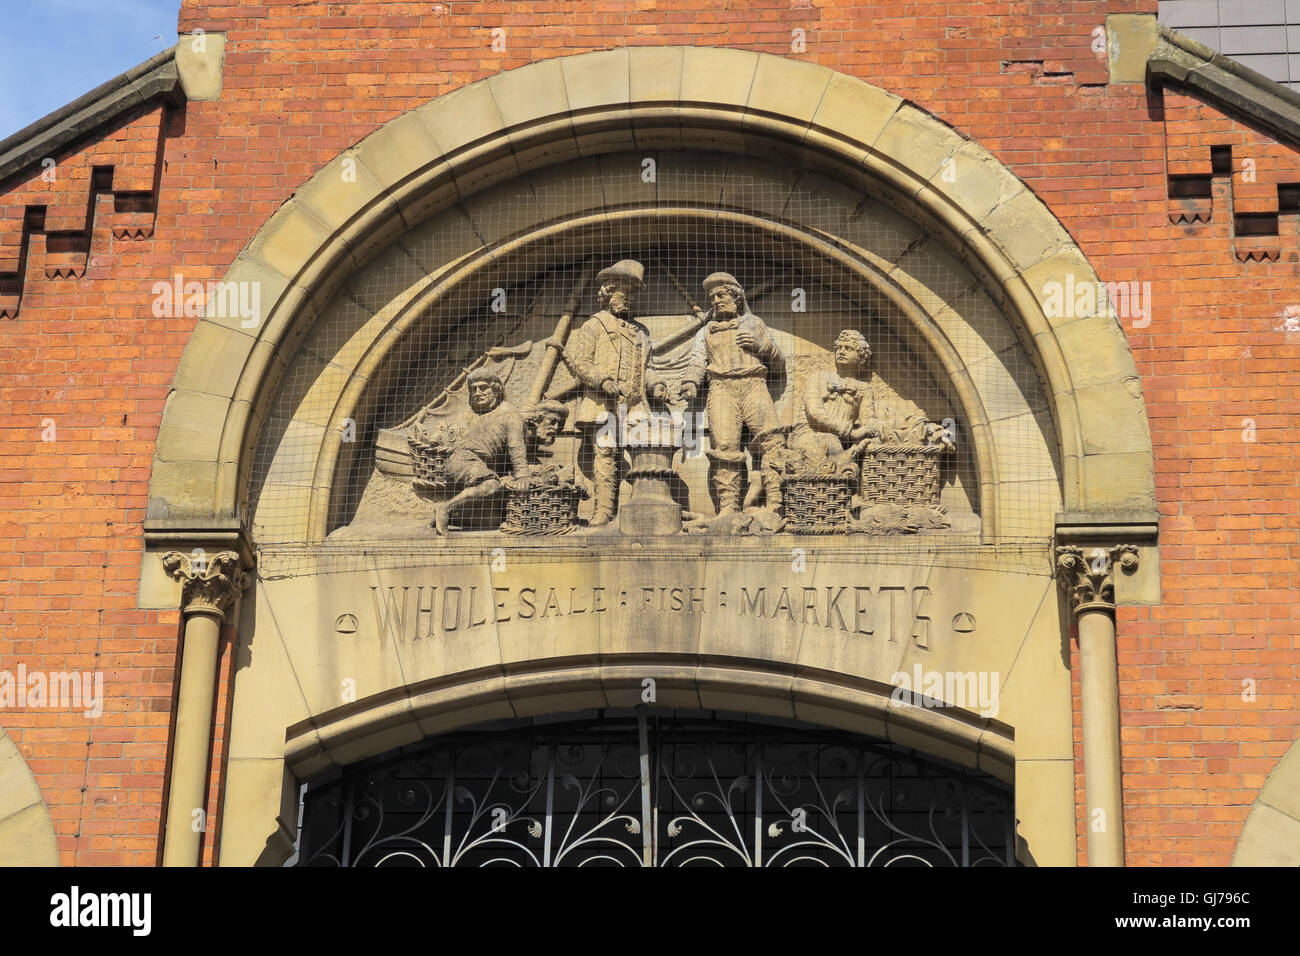 Smithfield vieux poissons figures sculptées marchés,le centre-ville de Manchester, Angleterre, Royaume-Uni Banque D'Images